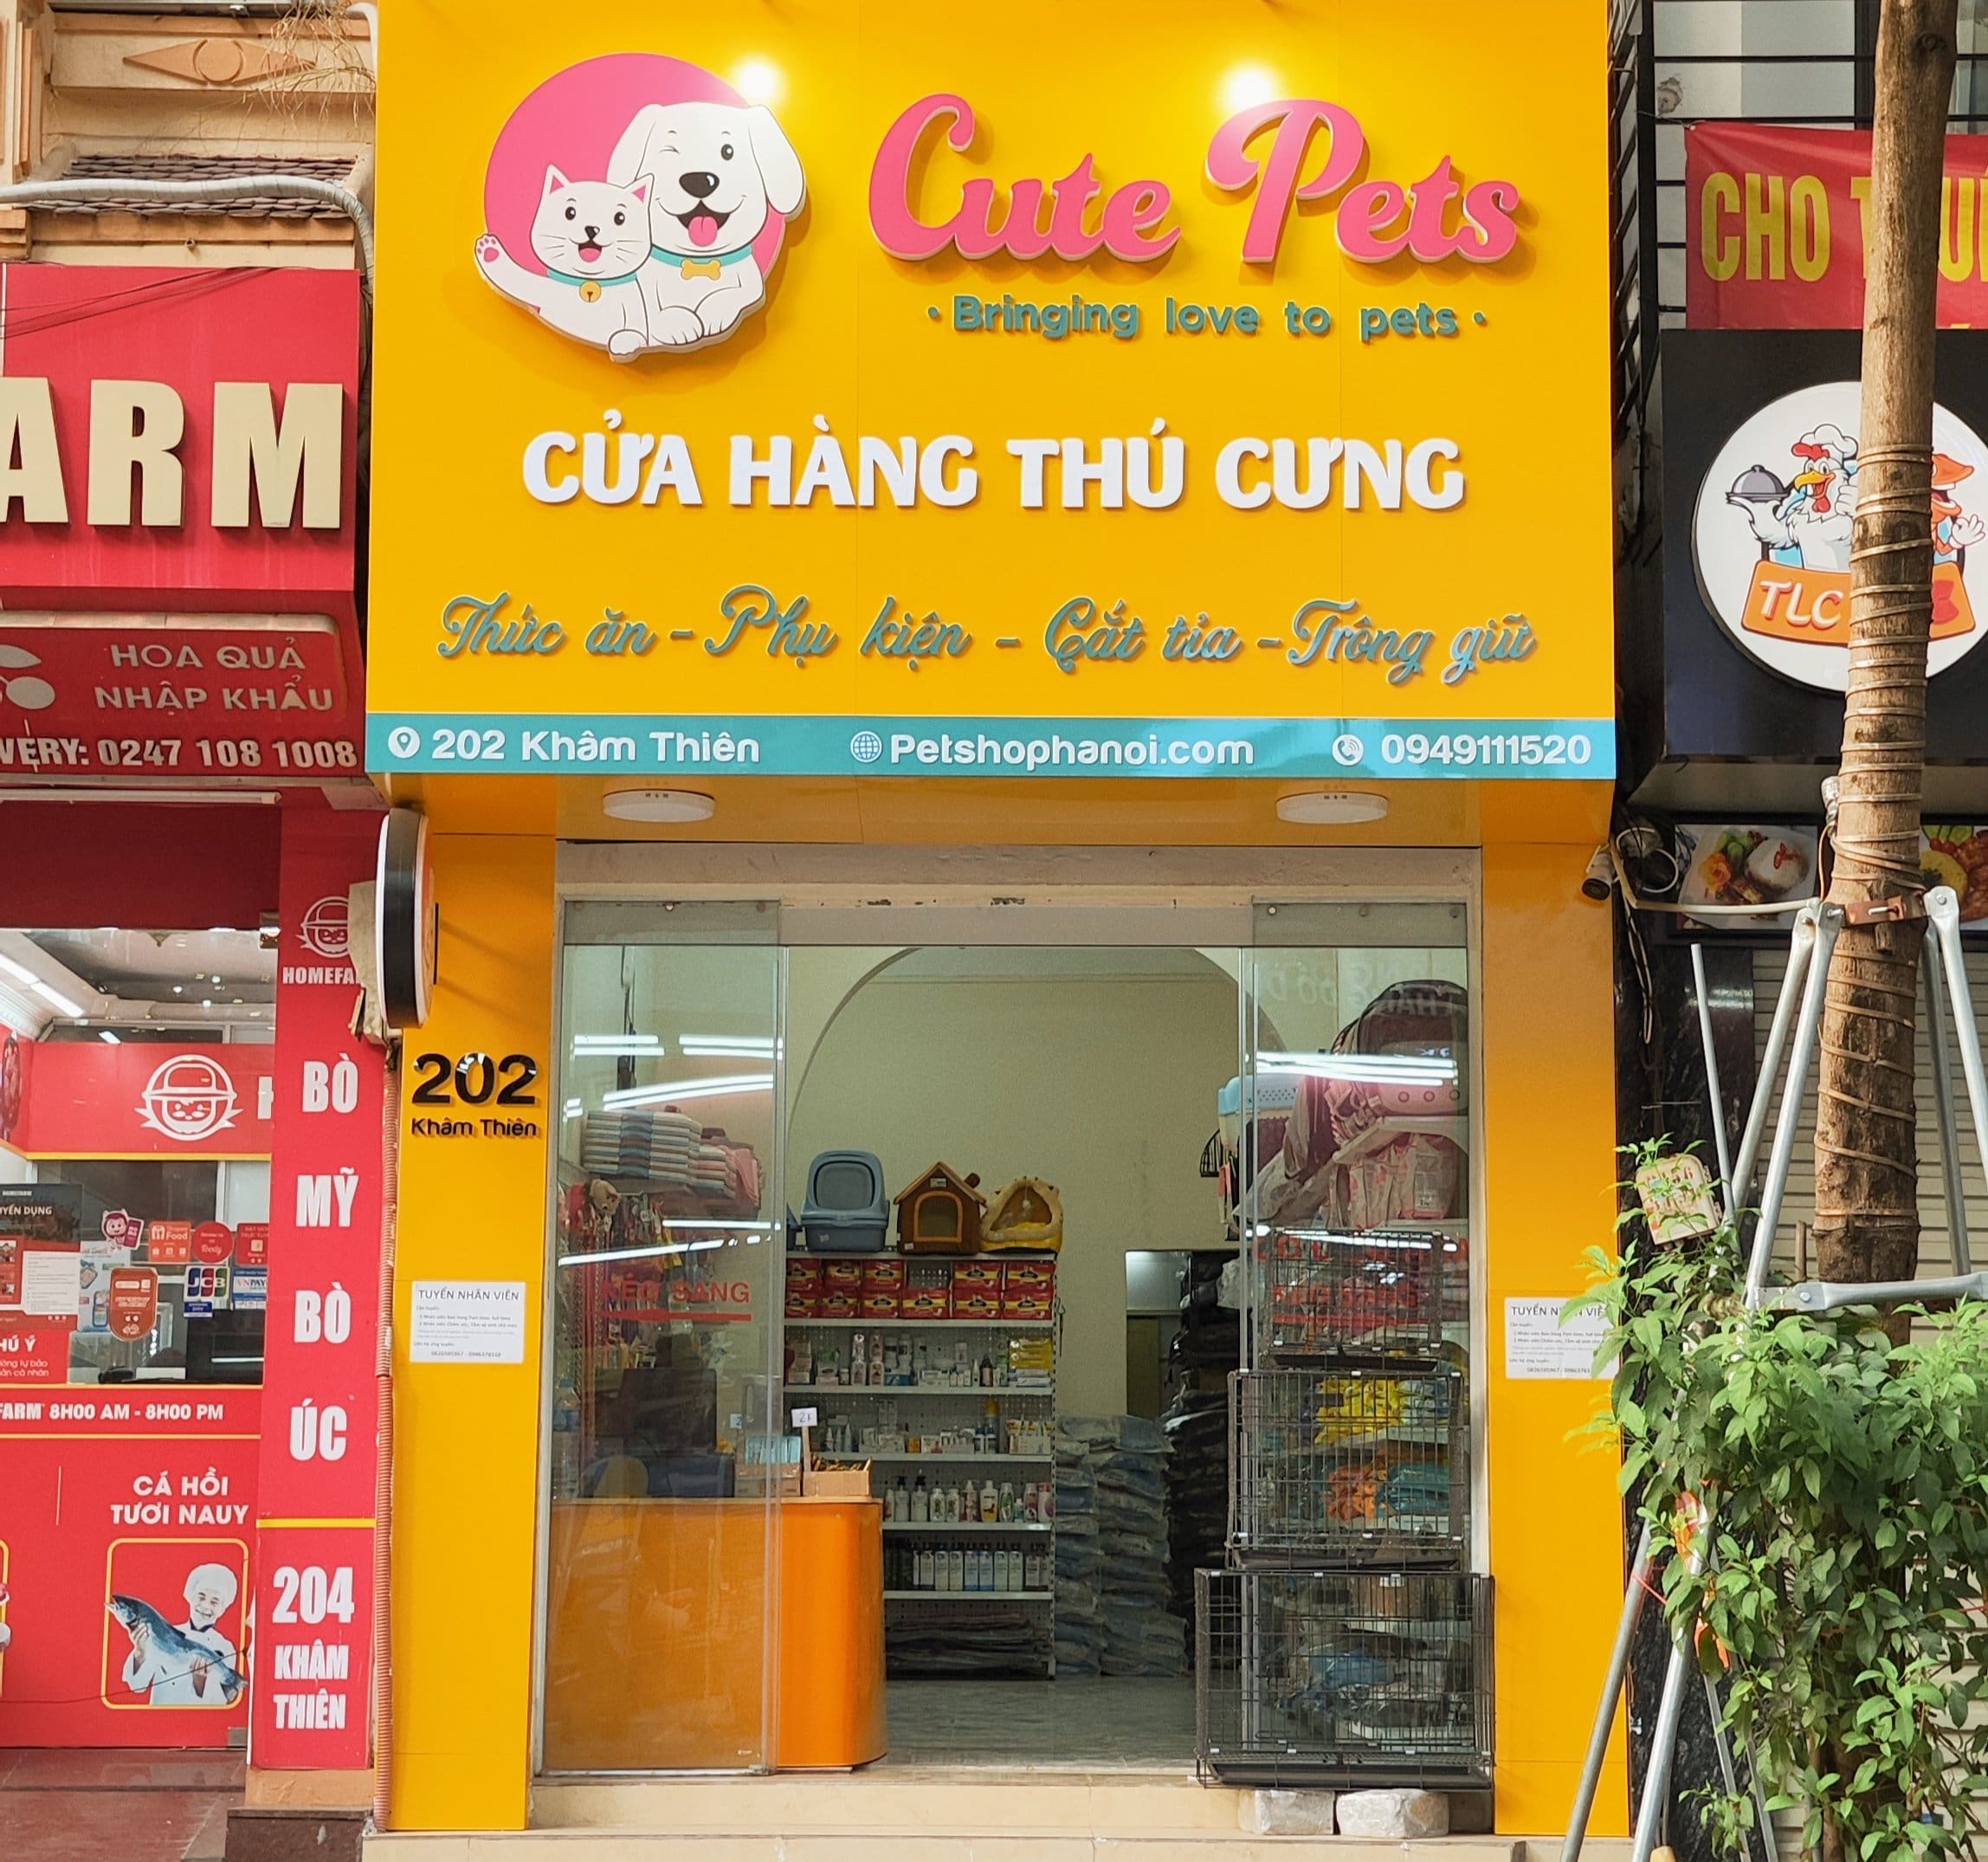 Cutepets - Cửa Hàng Thú Cưng Uy Tín Tại Hà Nội